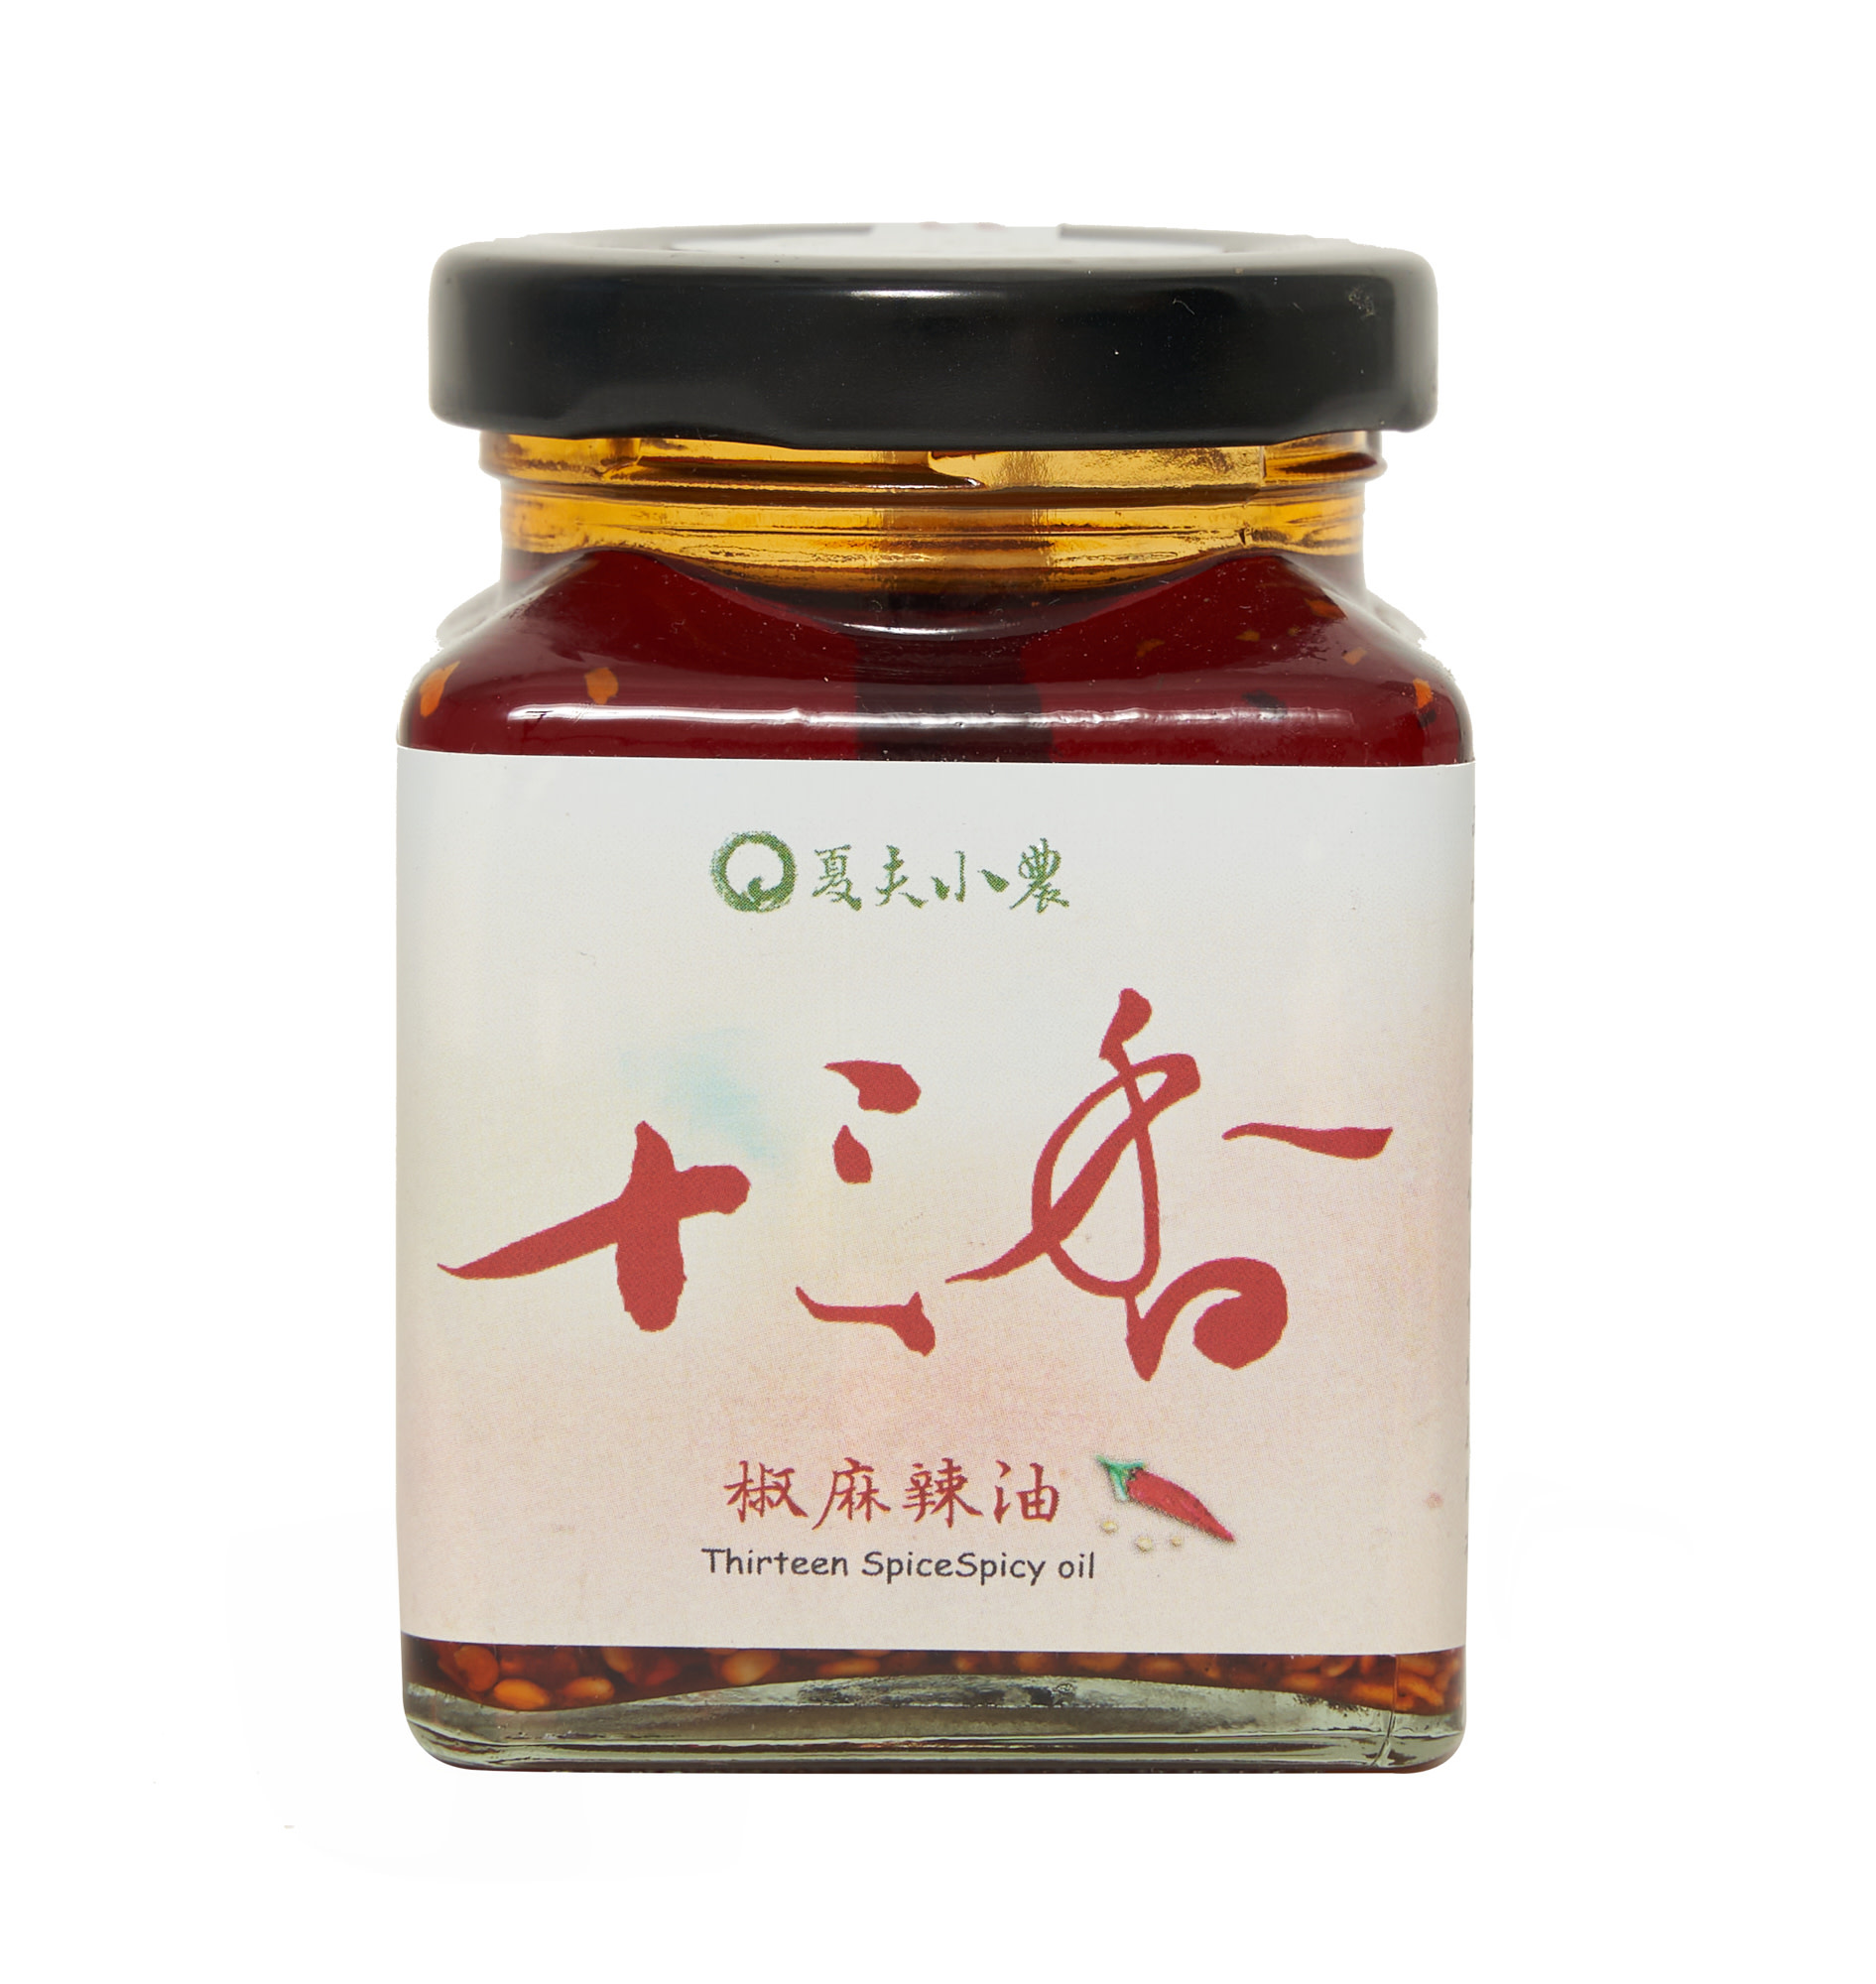 Premium Thirteen Spice Spicy Oil (hand-made)